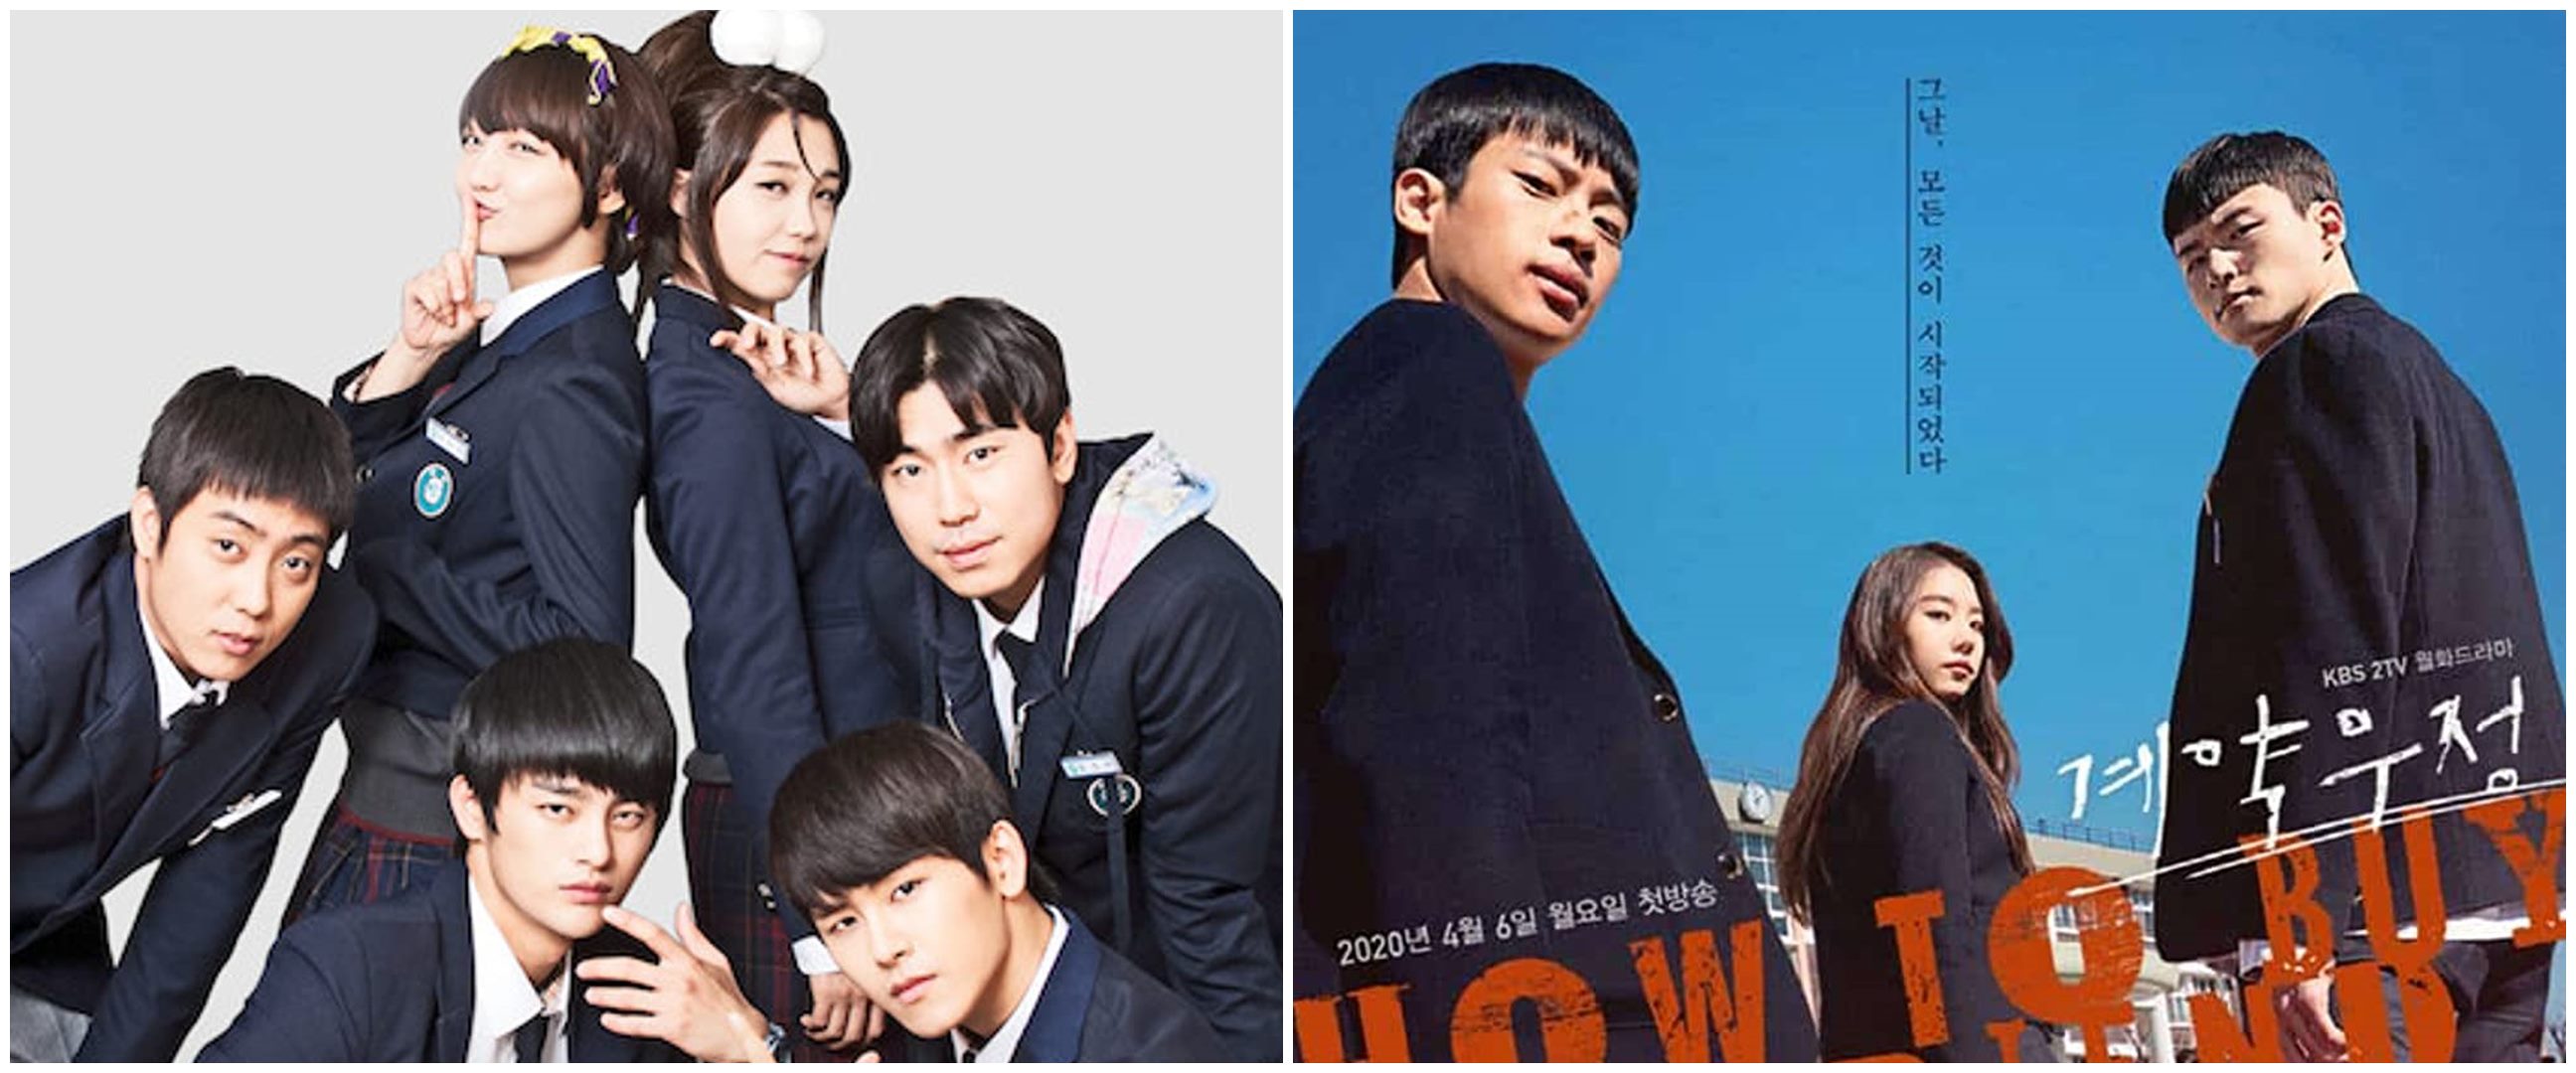 11 Drama Korea geng sekolah, kisah persahabatan hingga cerita misteri